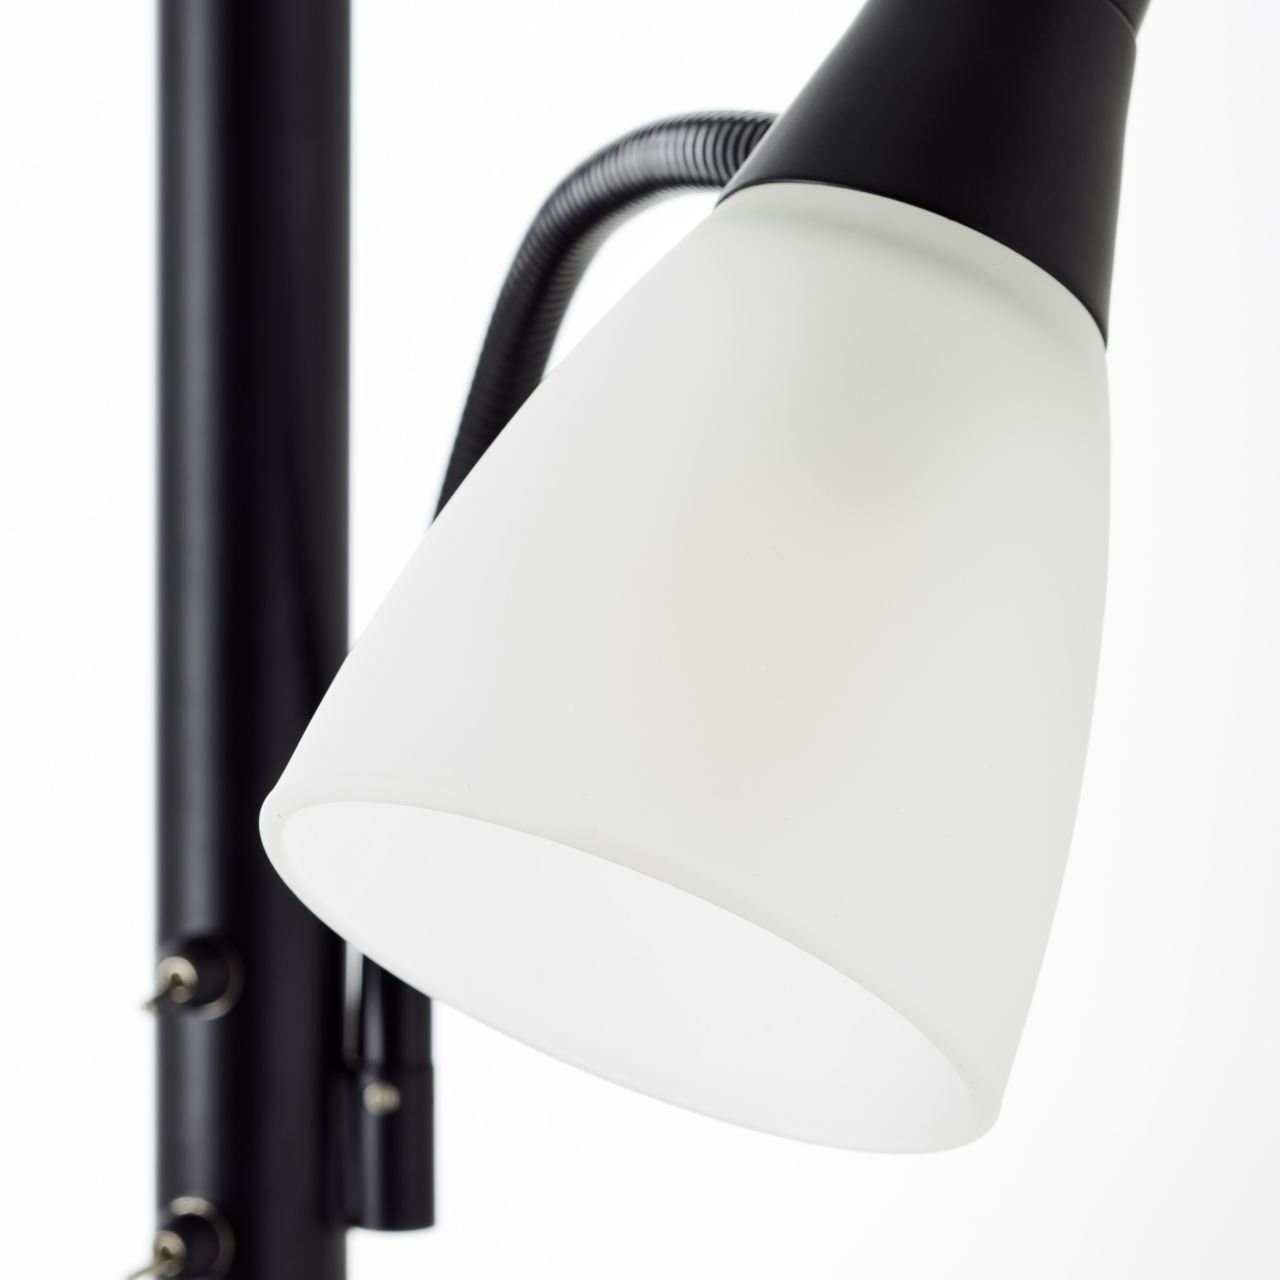 Brilliant Stehlampe Lucy, Lucy LED Deckenfluter Lesearm schwarz, Metall/Glas,  1x A60, E27, 5 W, Energiesparend und langlebig durch den Einsatz von LED -Technik